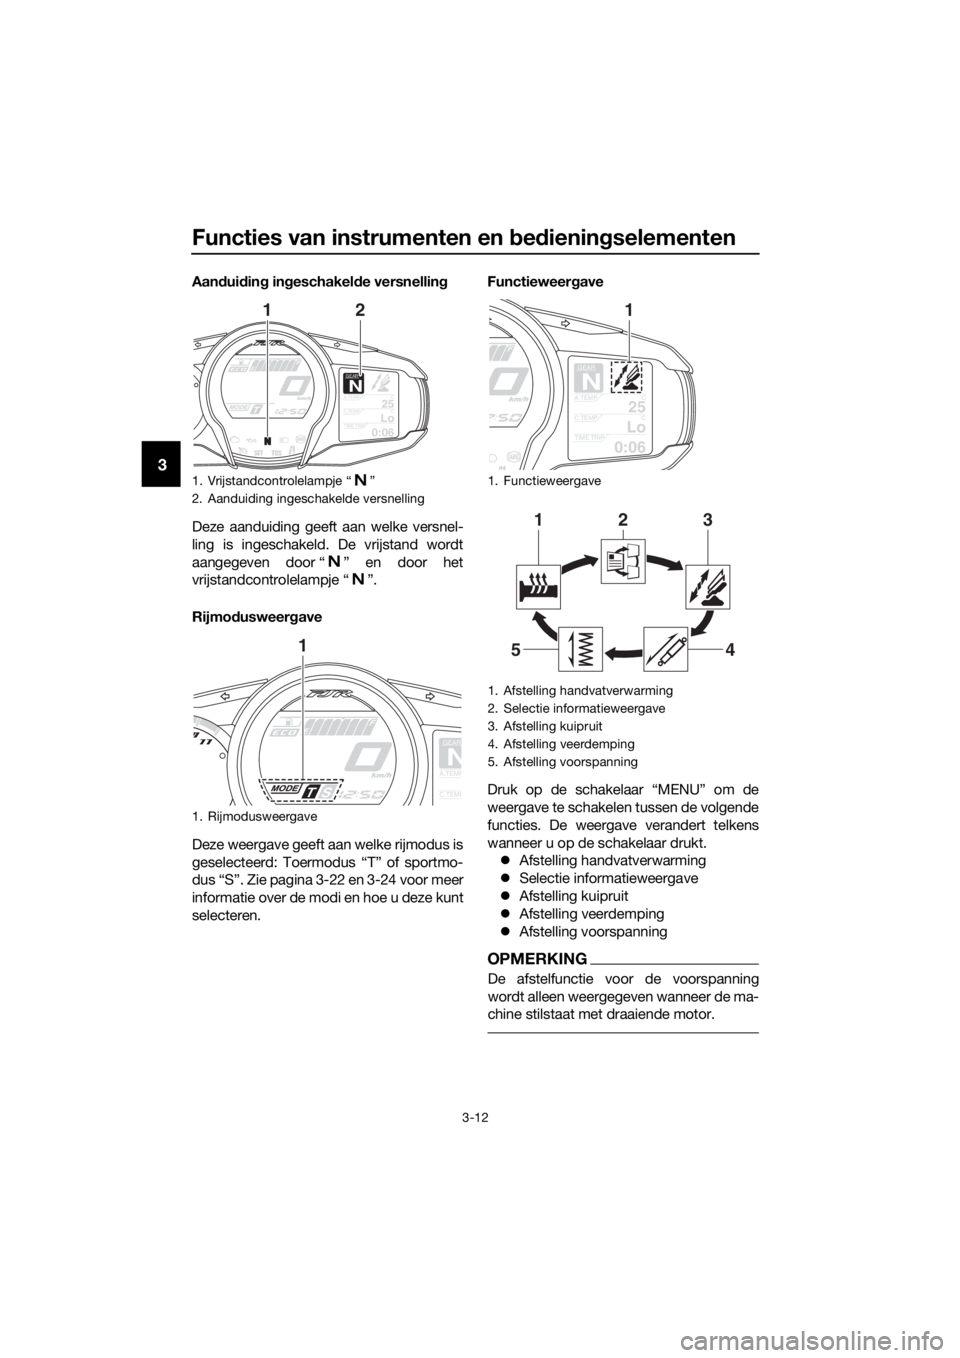 YAMAHA FJR1300AE 2016  Instructieboekje (in Dutch) Functies van instrumenten en bed iening selementen
3-12
3
Aandui din g in geschakel de versnellin g
Deze aanduiding geeft aan welke versnel-
ling is ingeschakeld. De vrijstand wordt
aangegeven door �